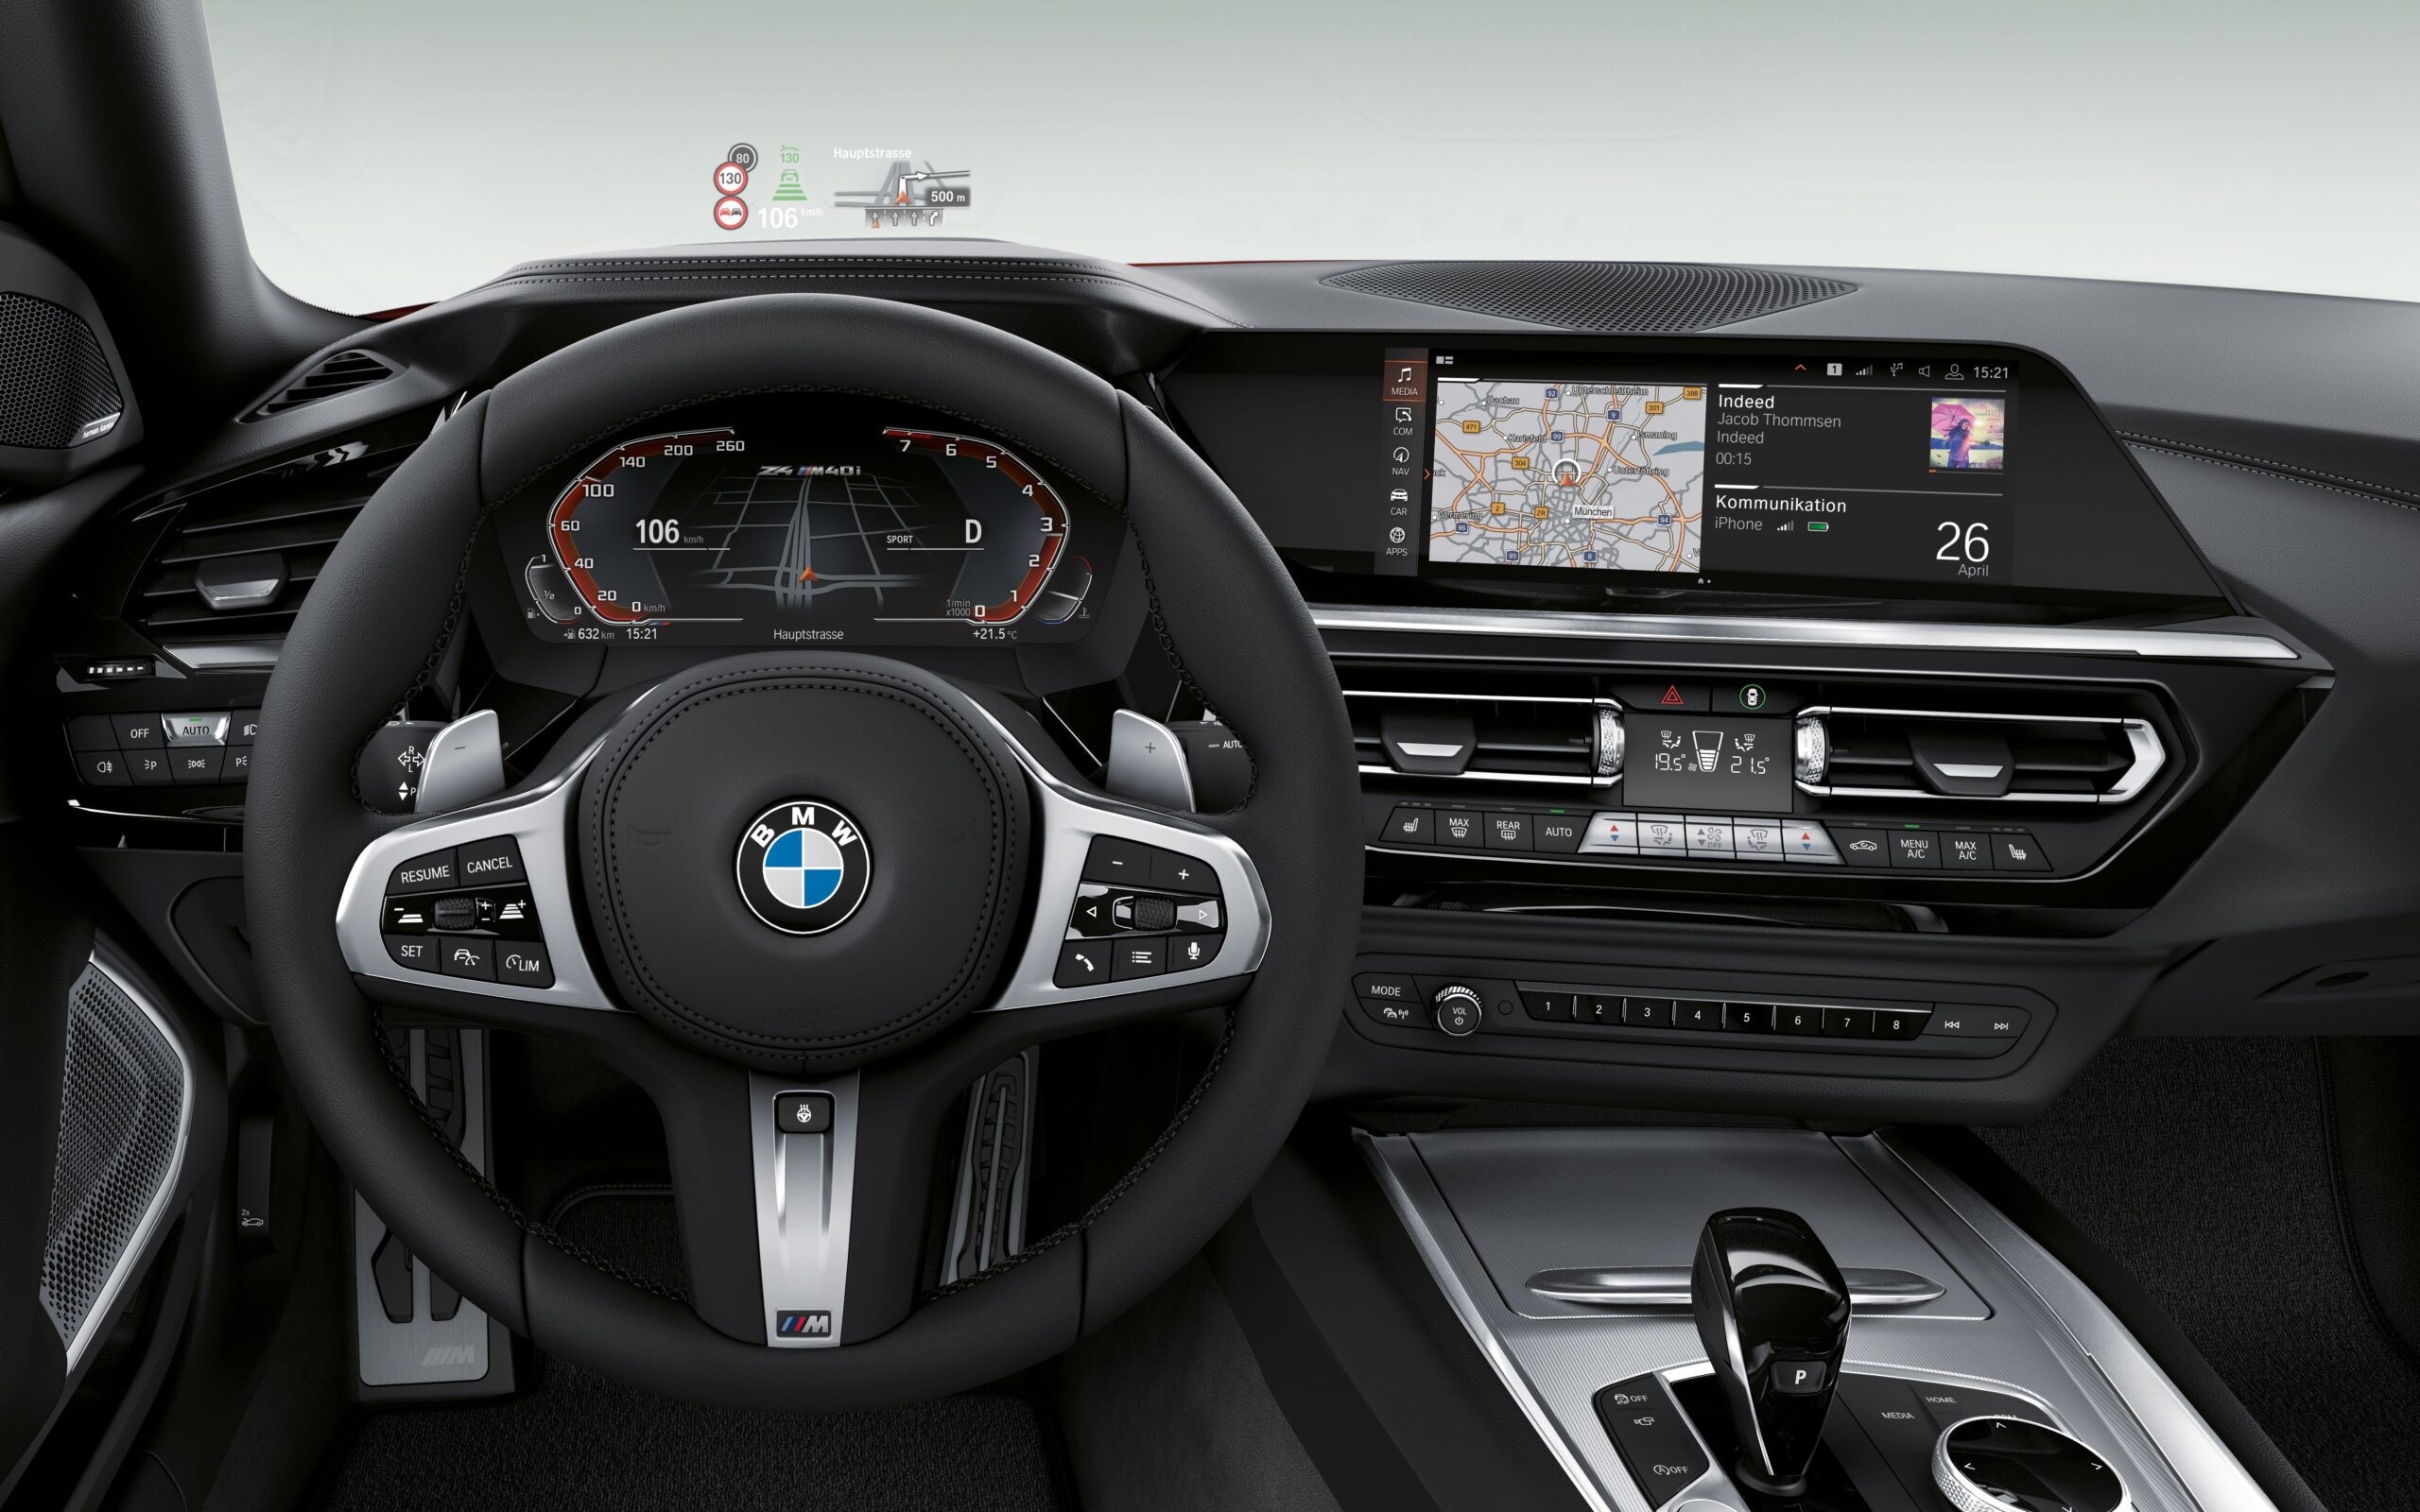 Hình ảnh nội thất xe BMW Z4 sang trọng 23